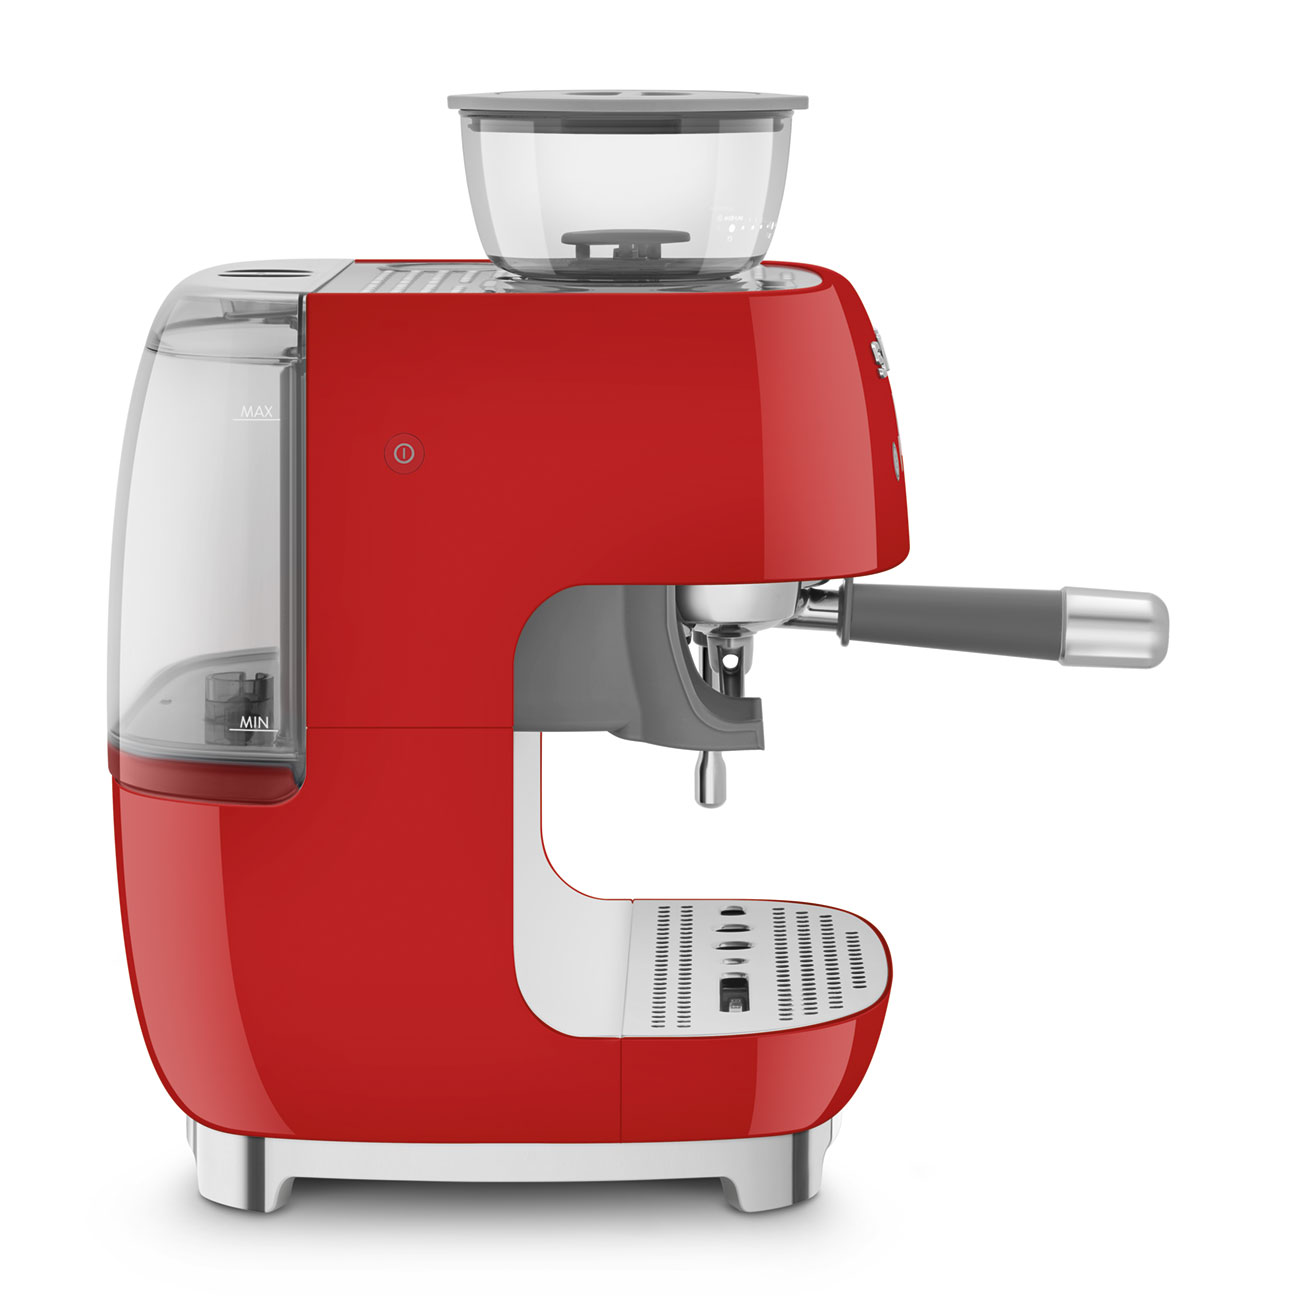 SMEG Siebträger Espressomaschine mit Mühle 50's Style Espressomaschinen SMEG    - Rheinland.Coffee